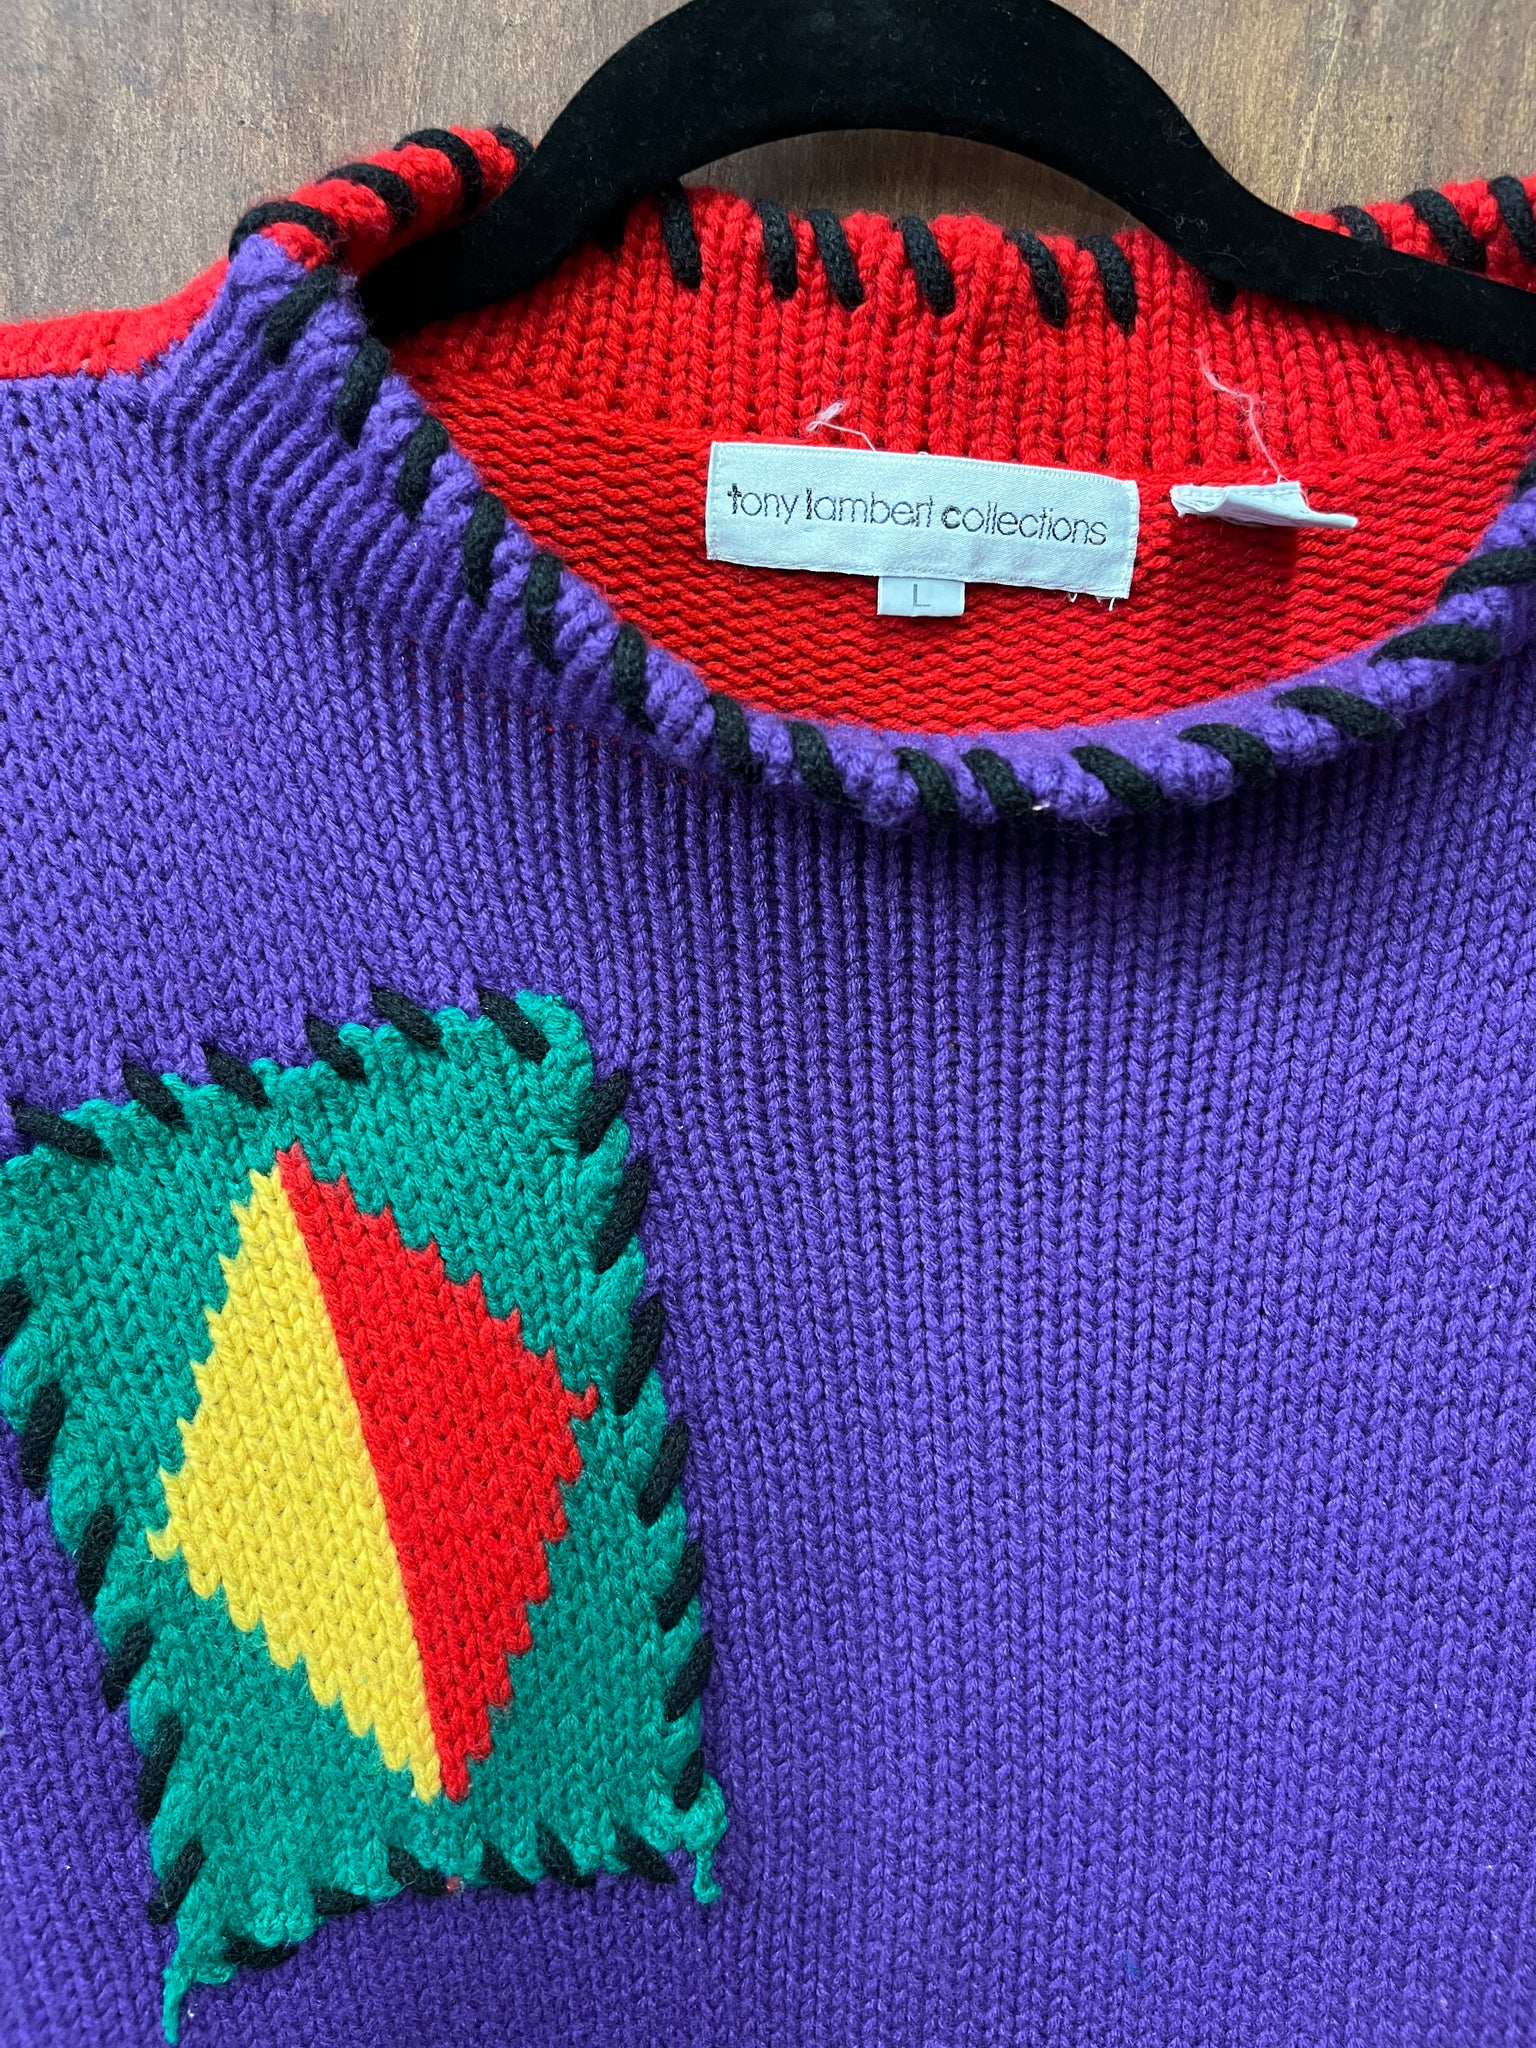 1990s SWEATER- Tony Lambert color block chunky knit